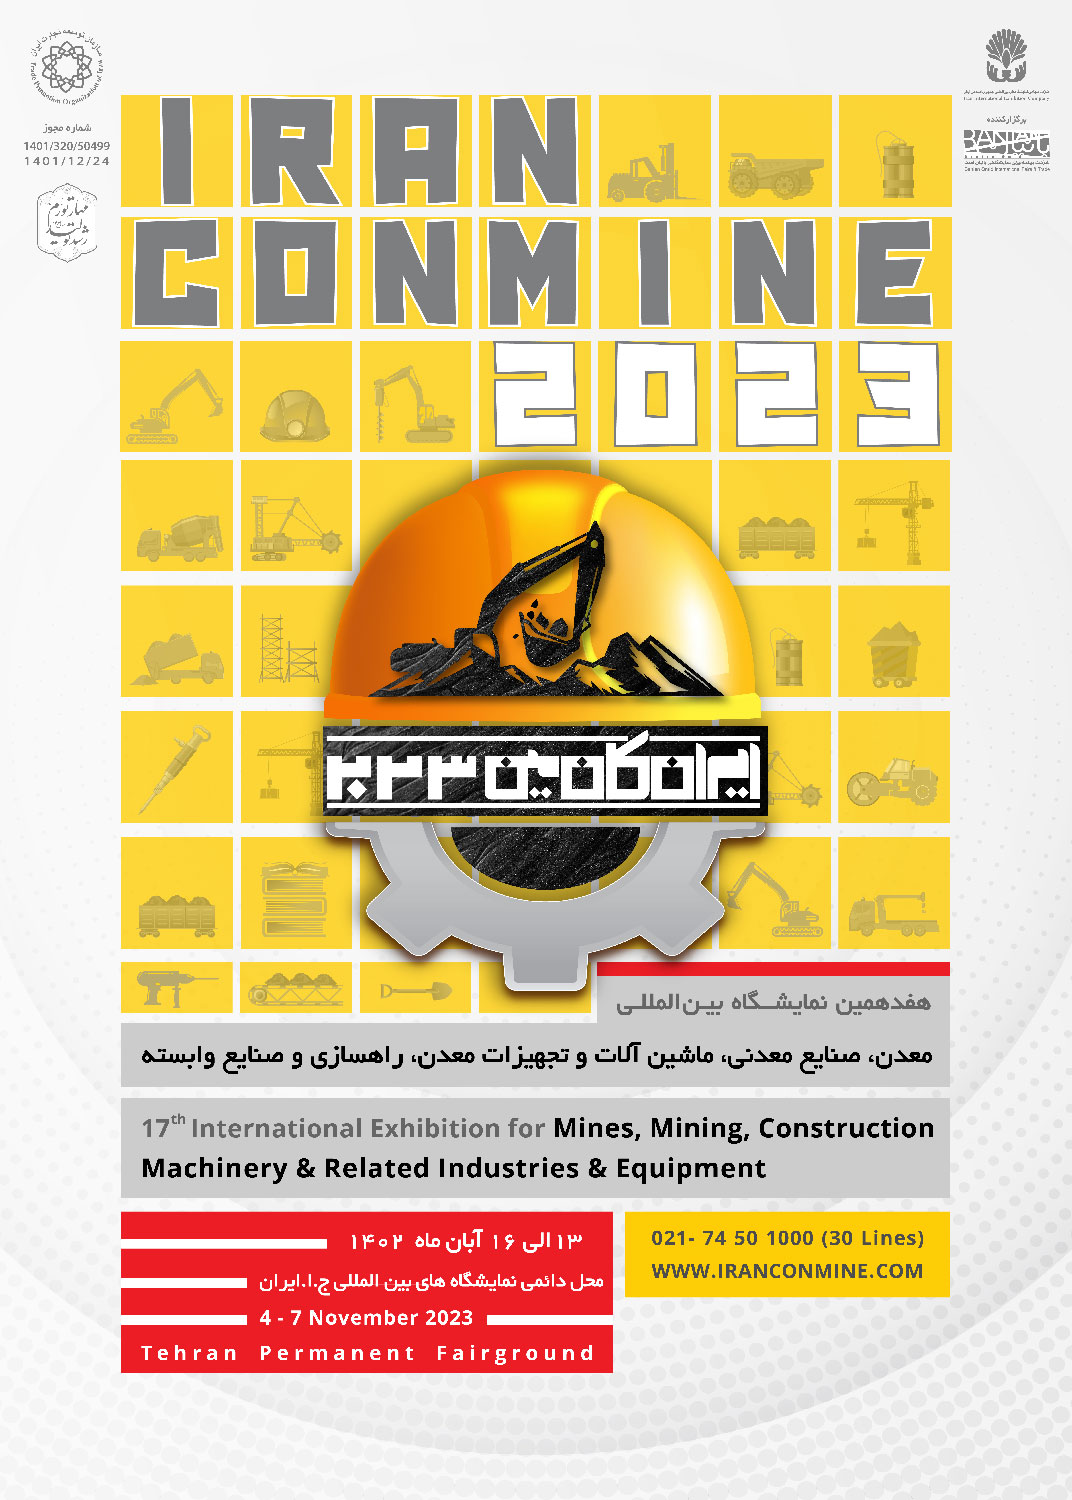 Iranconmine 2023 Poster